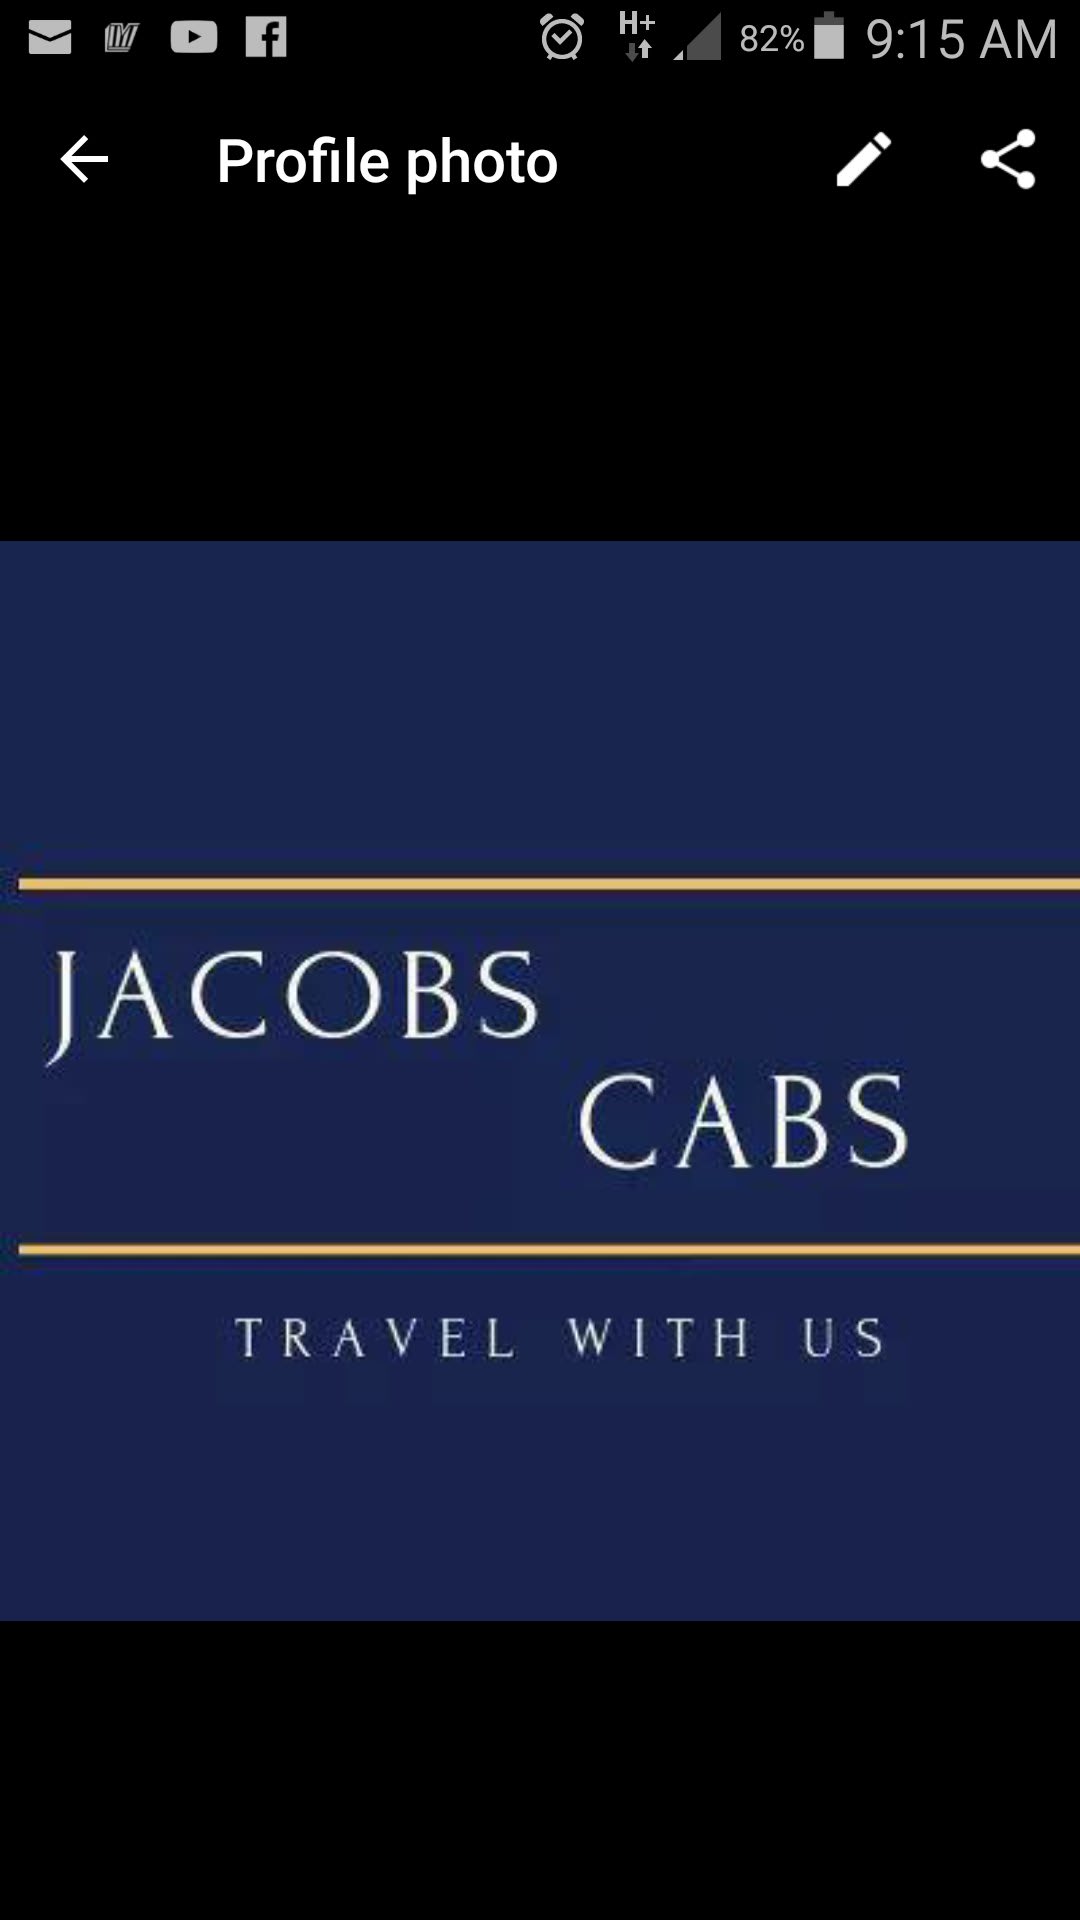 Jacob Cabs